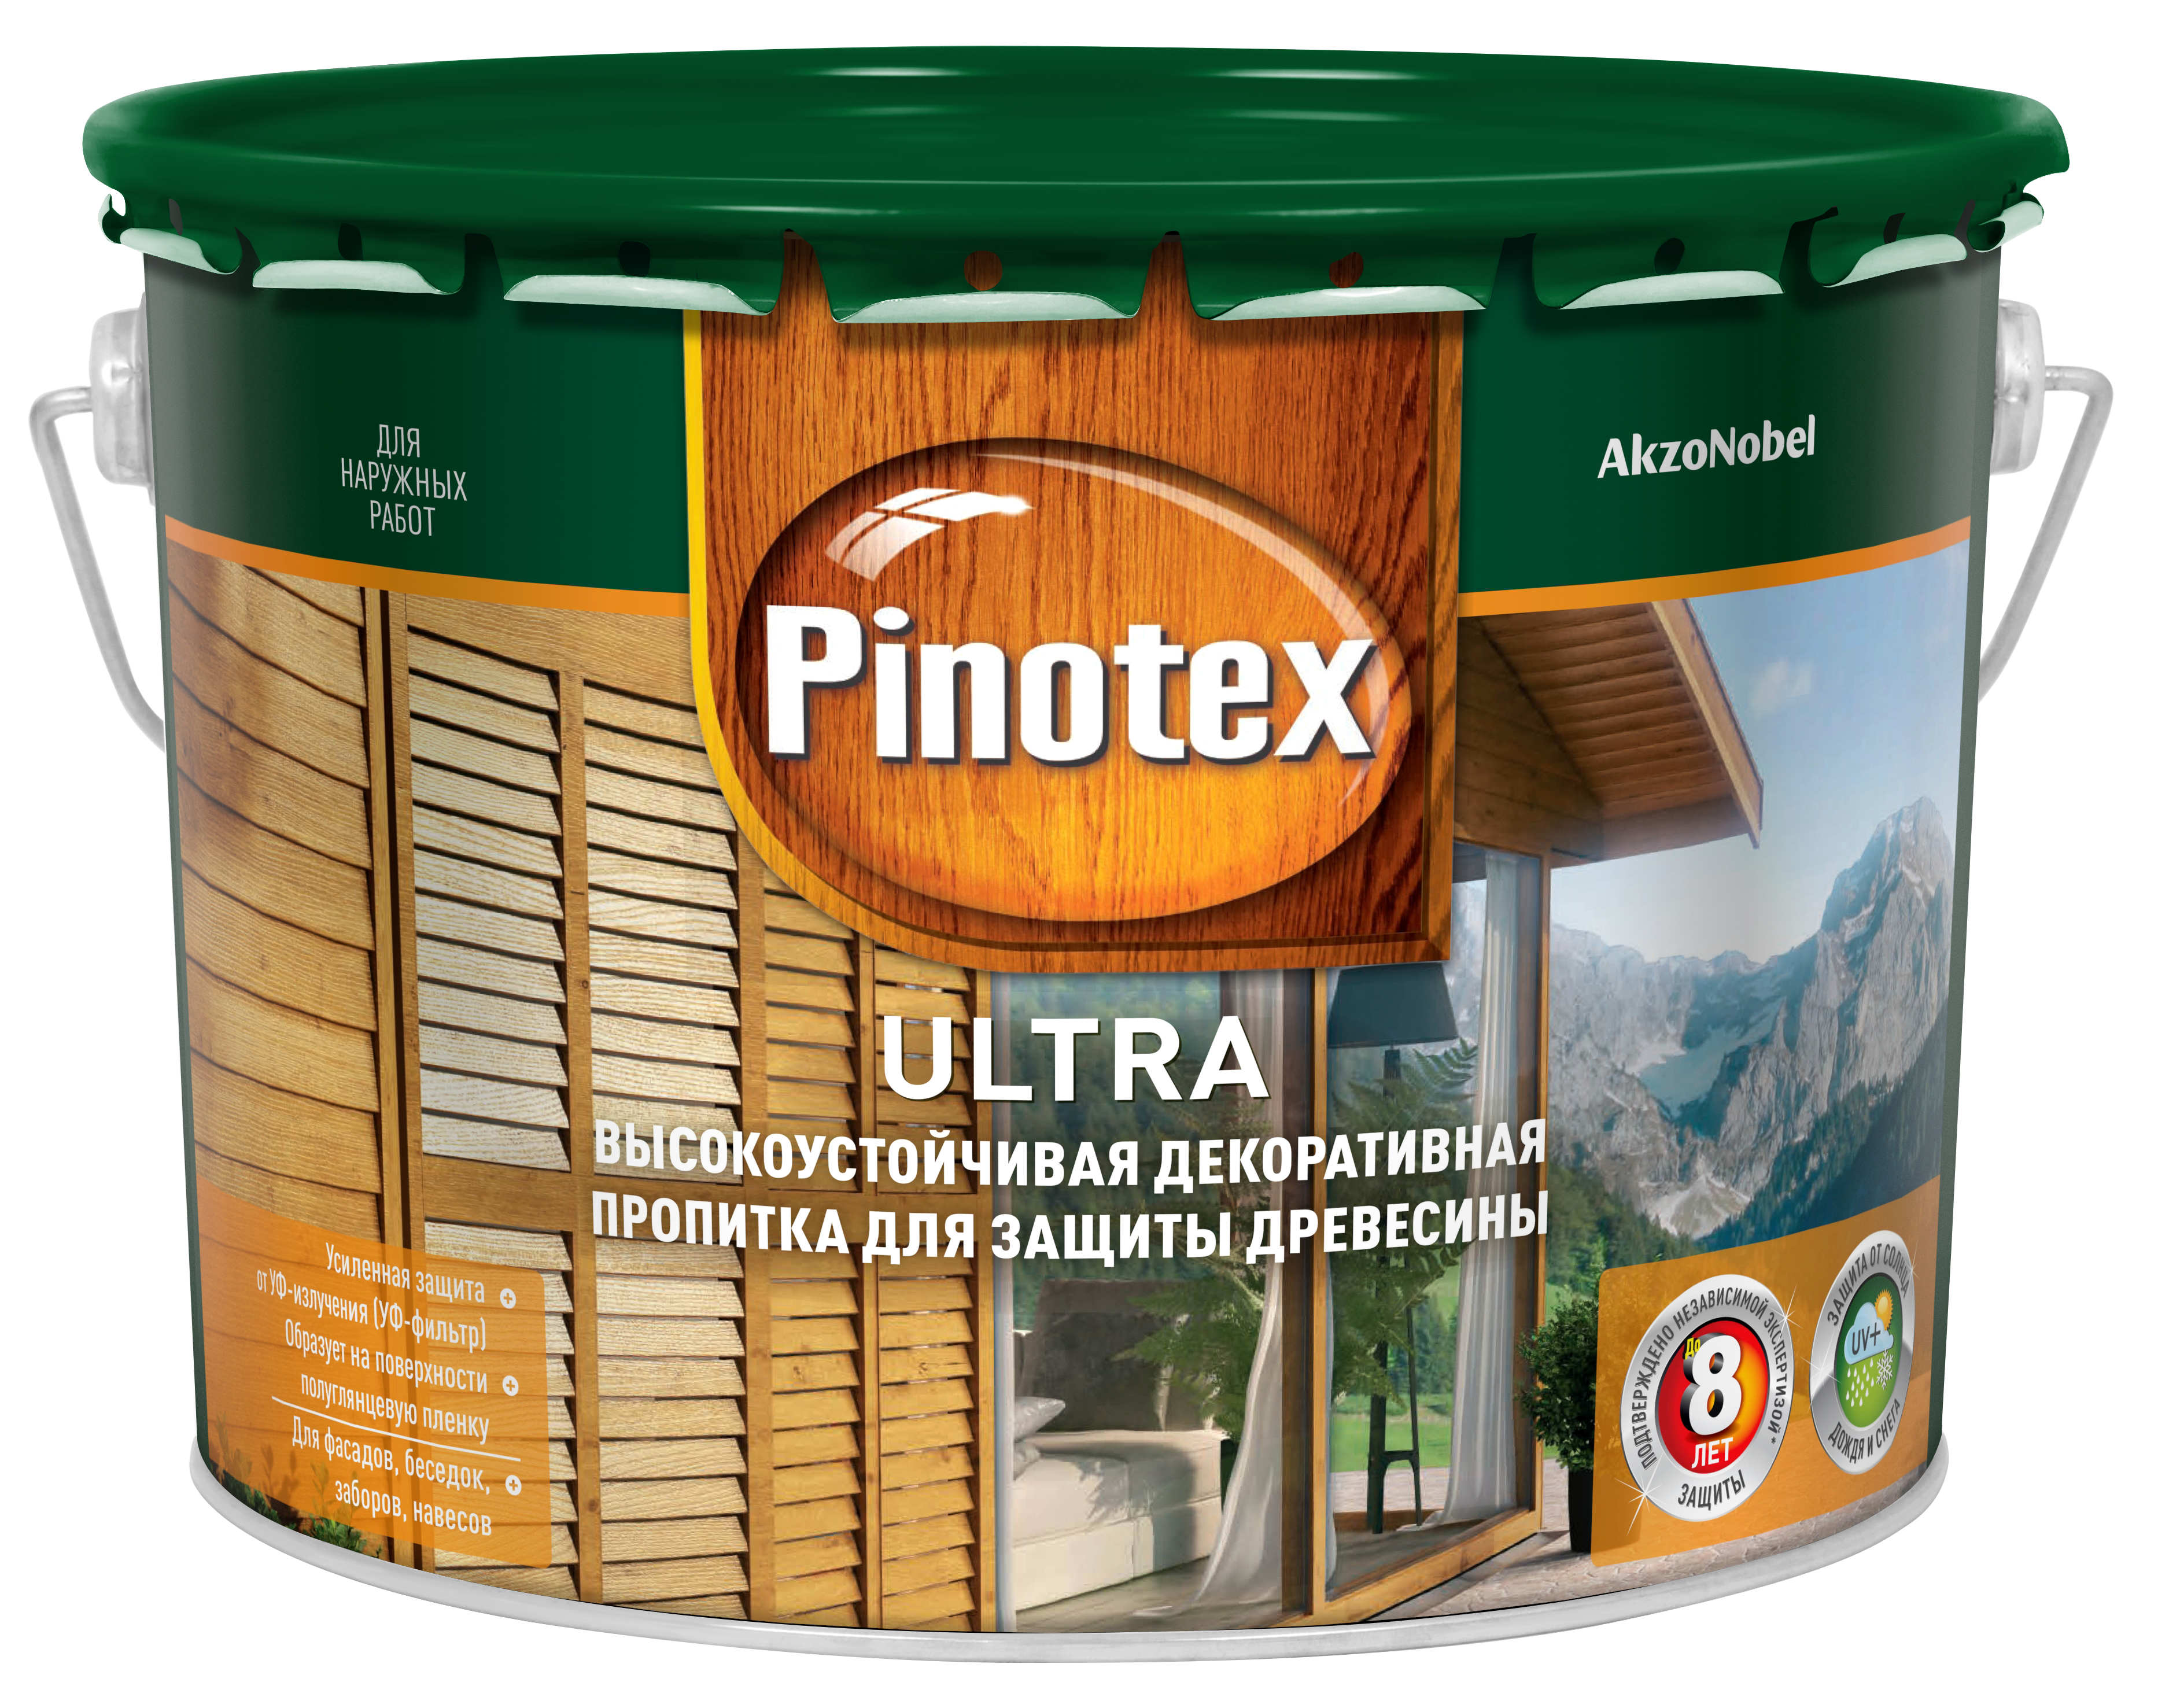 Пинотекс Ультра/Pinotex Ultra Высокоустойчивая пропитка купить Коломна, цена, отзывы